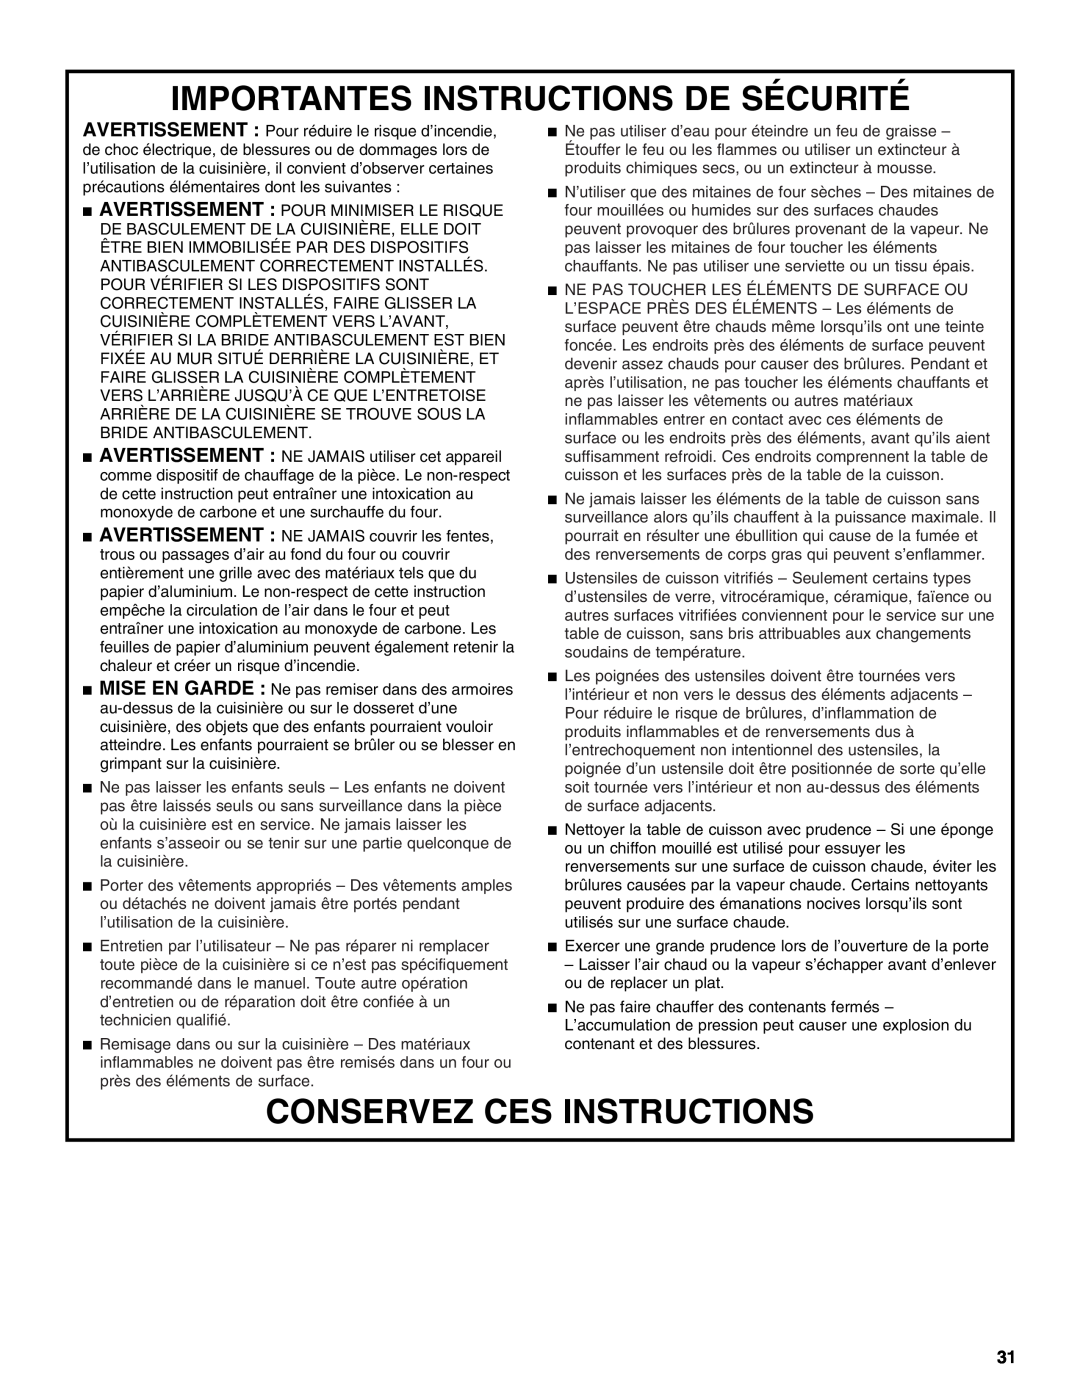 KitchenAid KDRS807 manual Importantes Instructions De Sécurité, Conservez Ces Instructions 